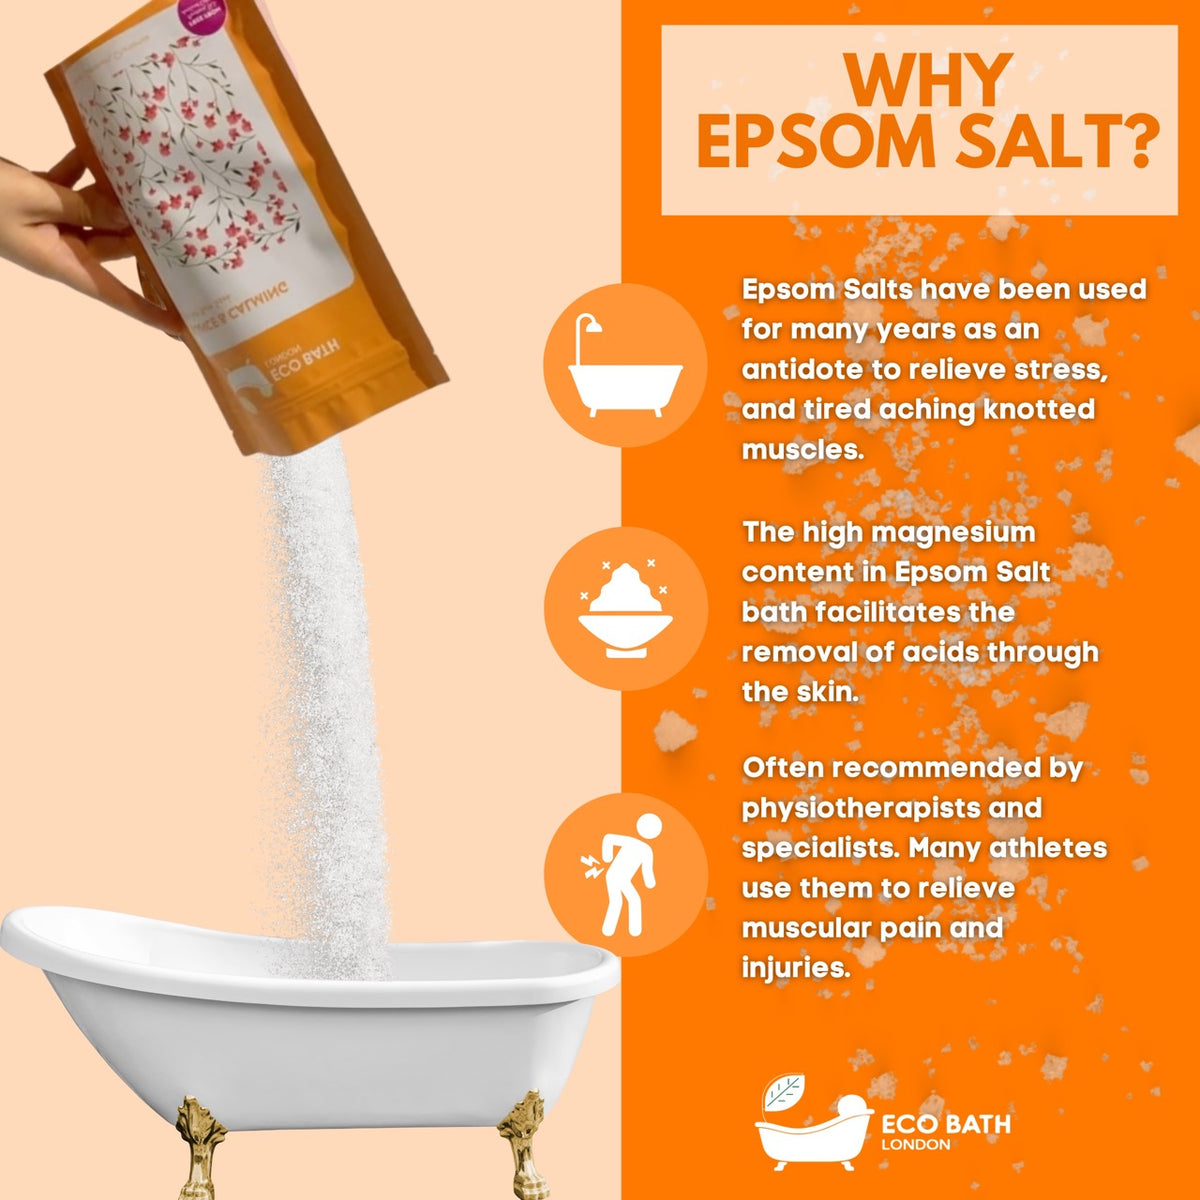 Eco Bath Balance and Calming Epsom Salt Bath Soak - Pouch | 500g & 1000g